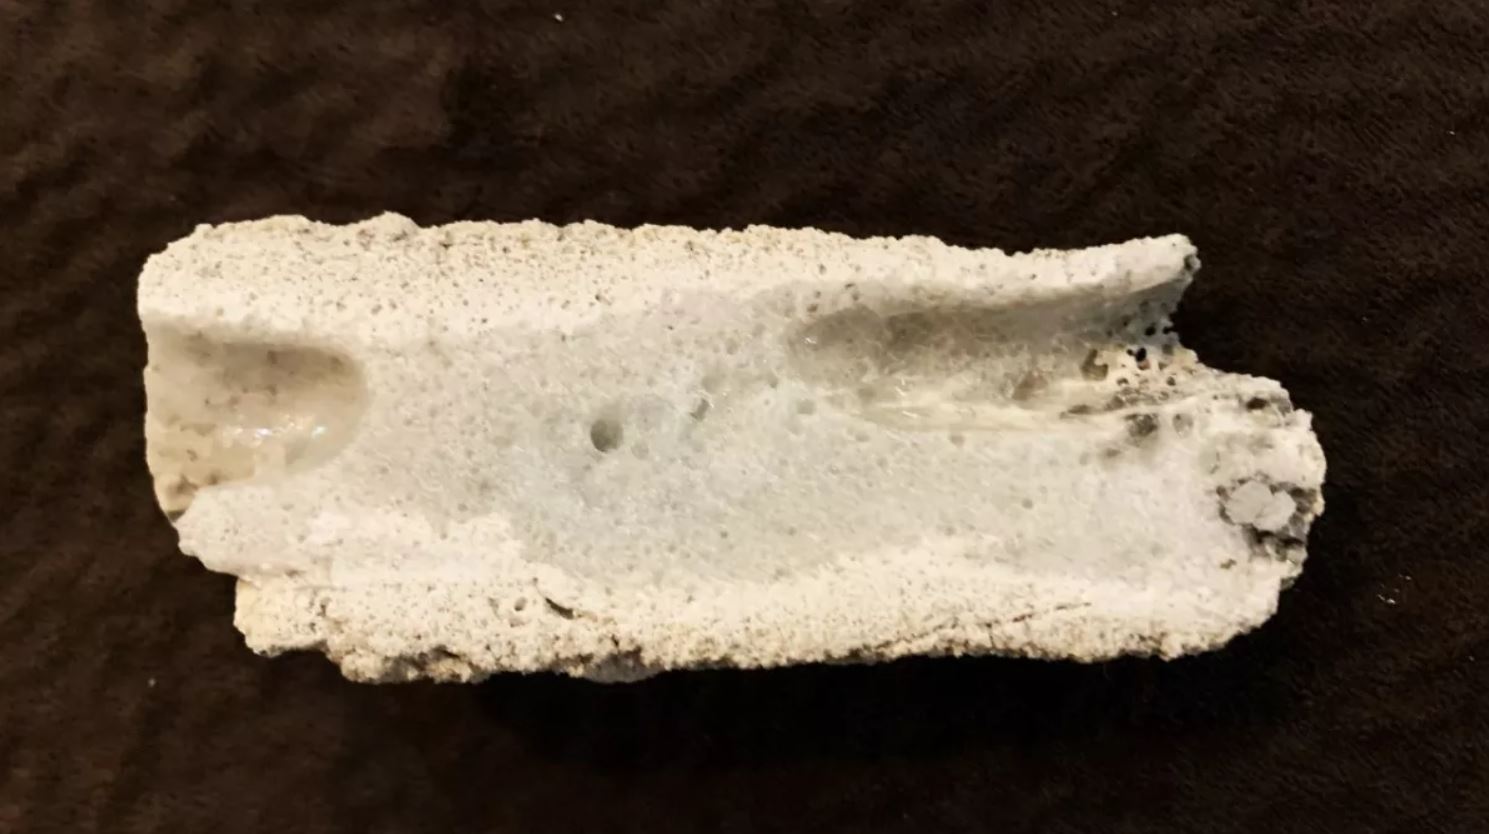 Arena fundida de un rayo o una línea eléctrica caída, conocida como fulgurita. Esta fulgurita, encontrada en Nebraska, contiene un material raro conocido como cuasicristal